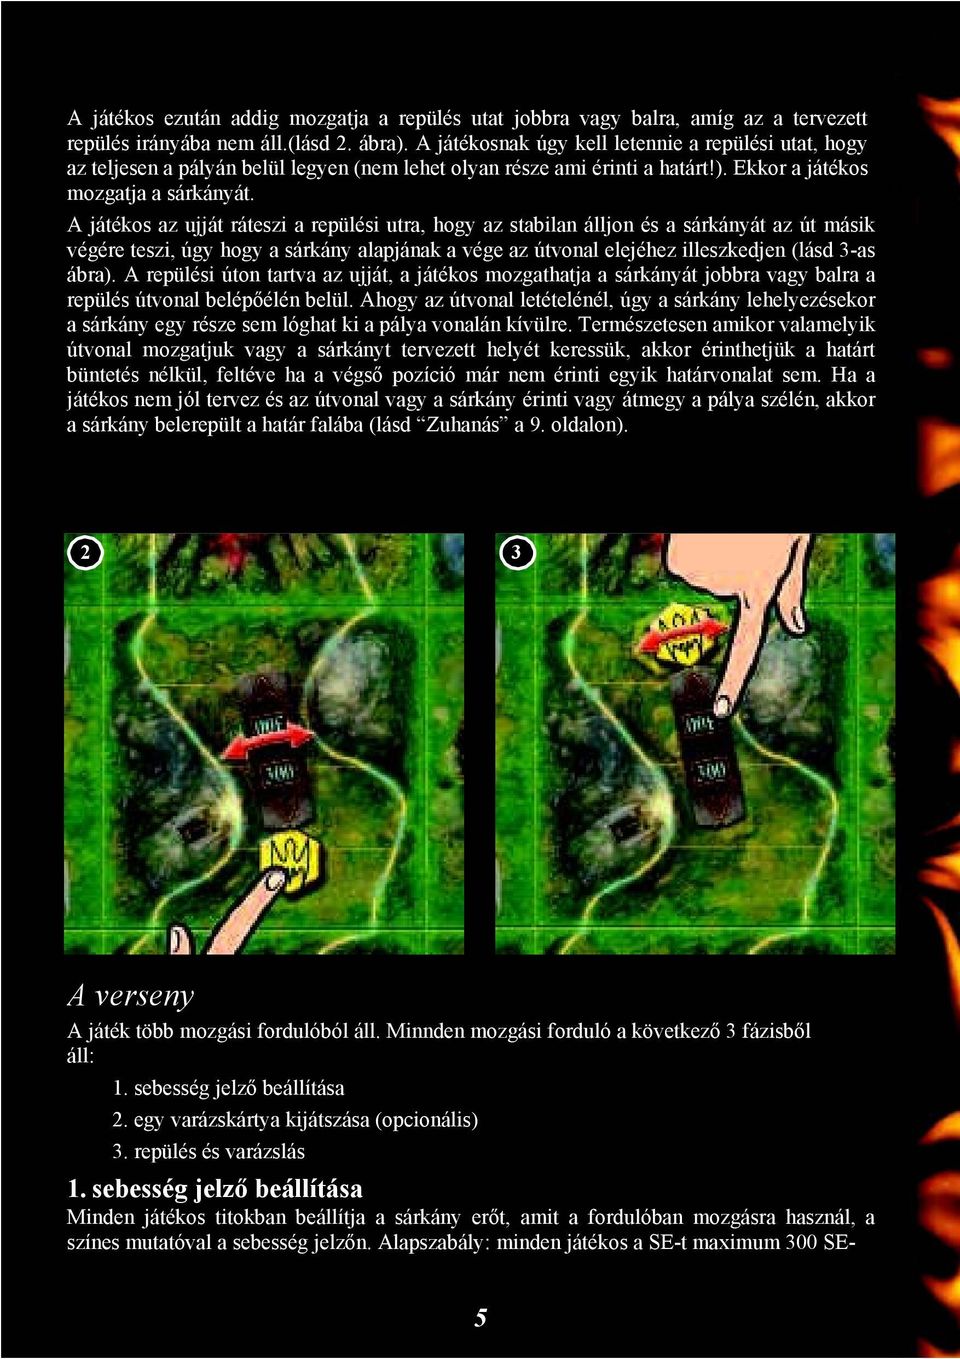 A játékos az ujját ráteszi a repülési utra, hogy az stabilan álljon és a sárkányát az út másik végére teszi, úgy hogy a sárkány alapjának a vége az útvonal elejéhez illeszkedjen (lásd 3-as ábra).